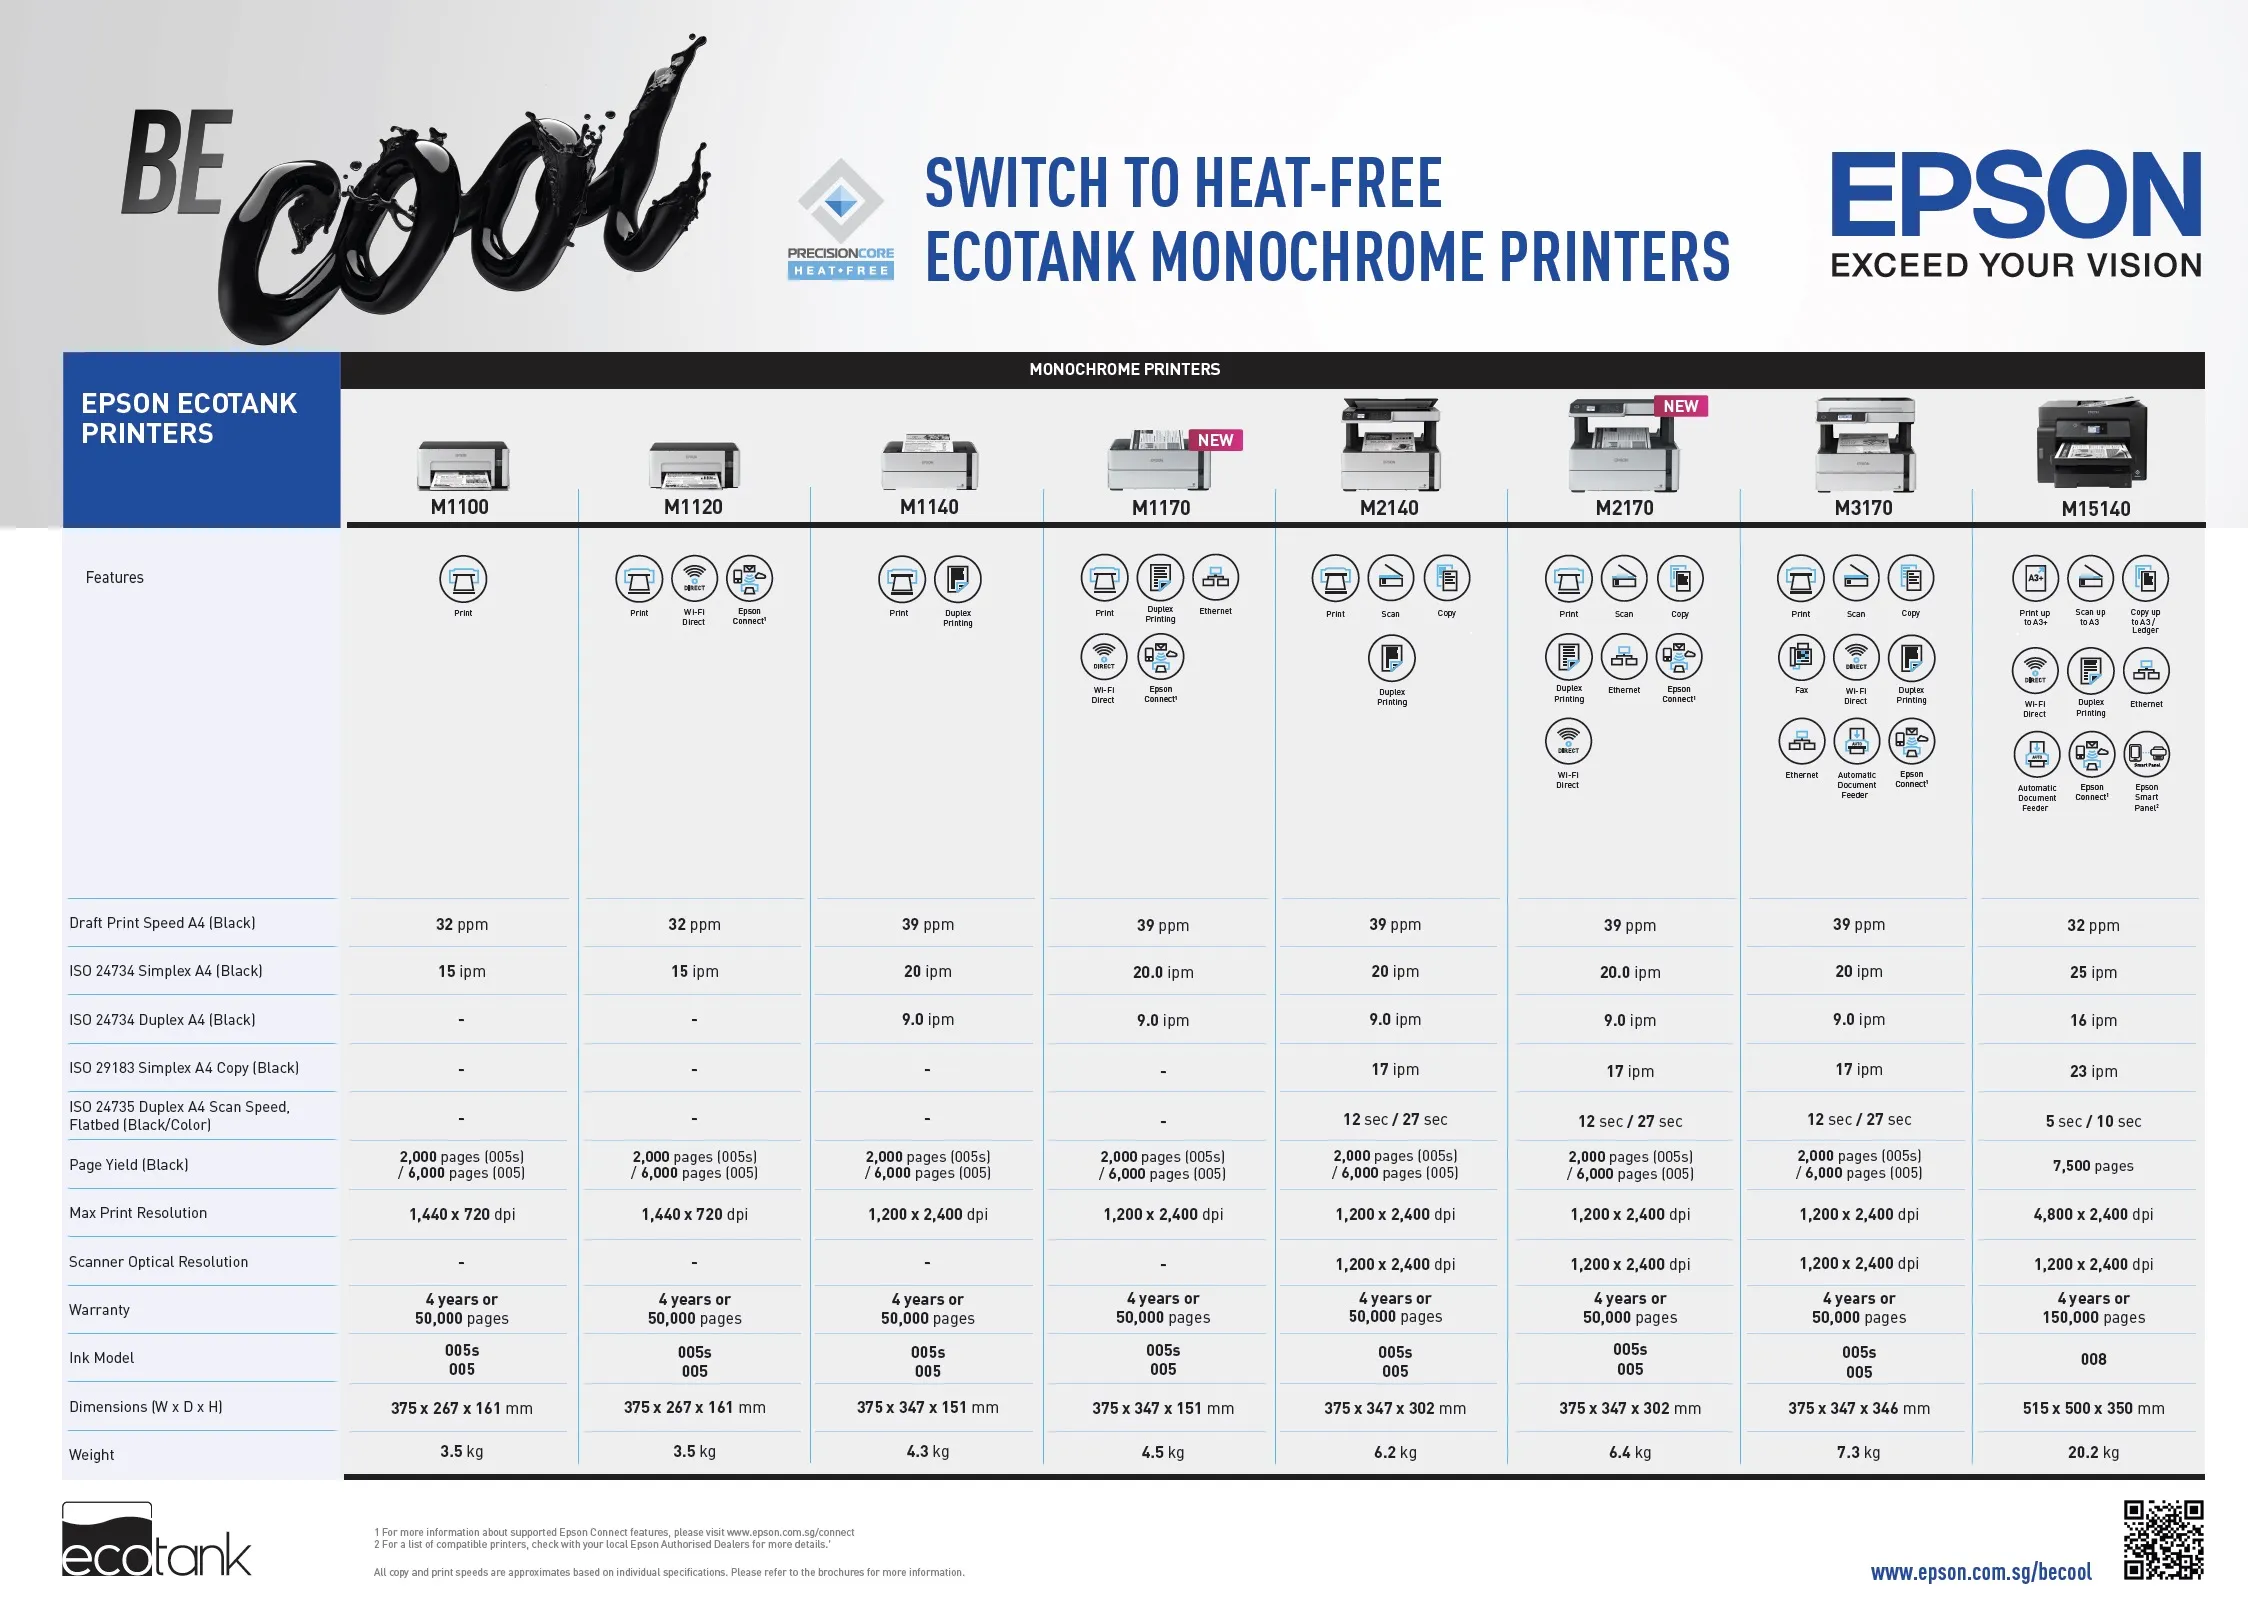 Epson bổ sung model mới cho dòng máy in trắng đen phục vụ cho doanh nghiệp vừa và nhỏ